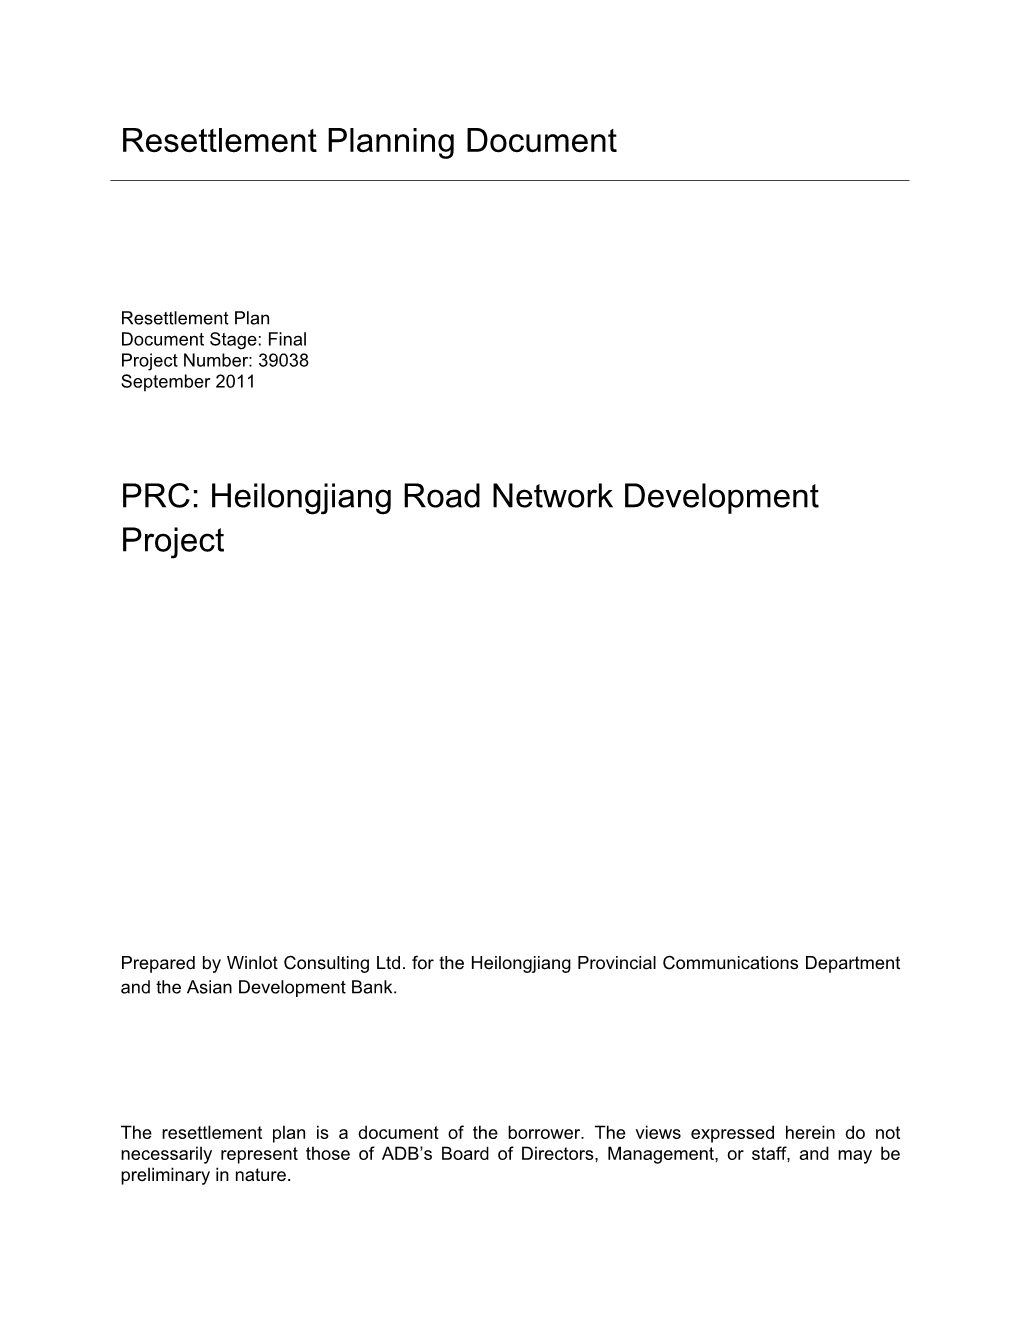 PRC: Heilongjiang Road Network Development Project